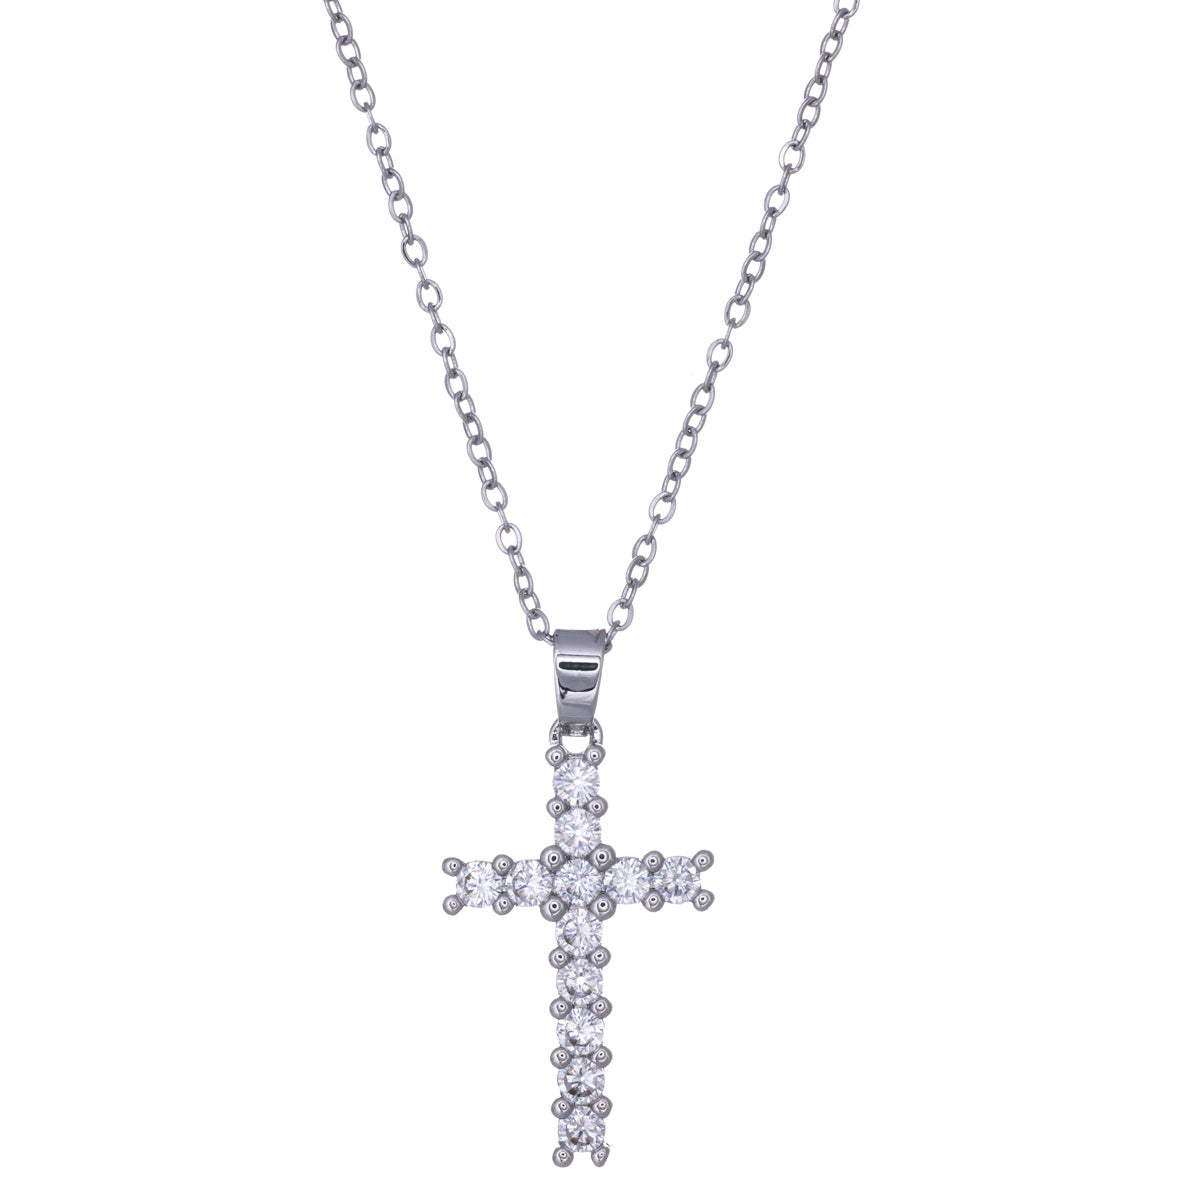 Zirconia cross pendant steel necklace 41cm (Steel 316L)